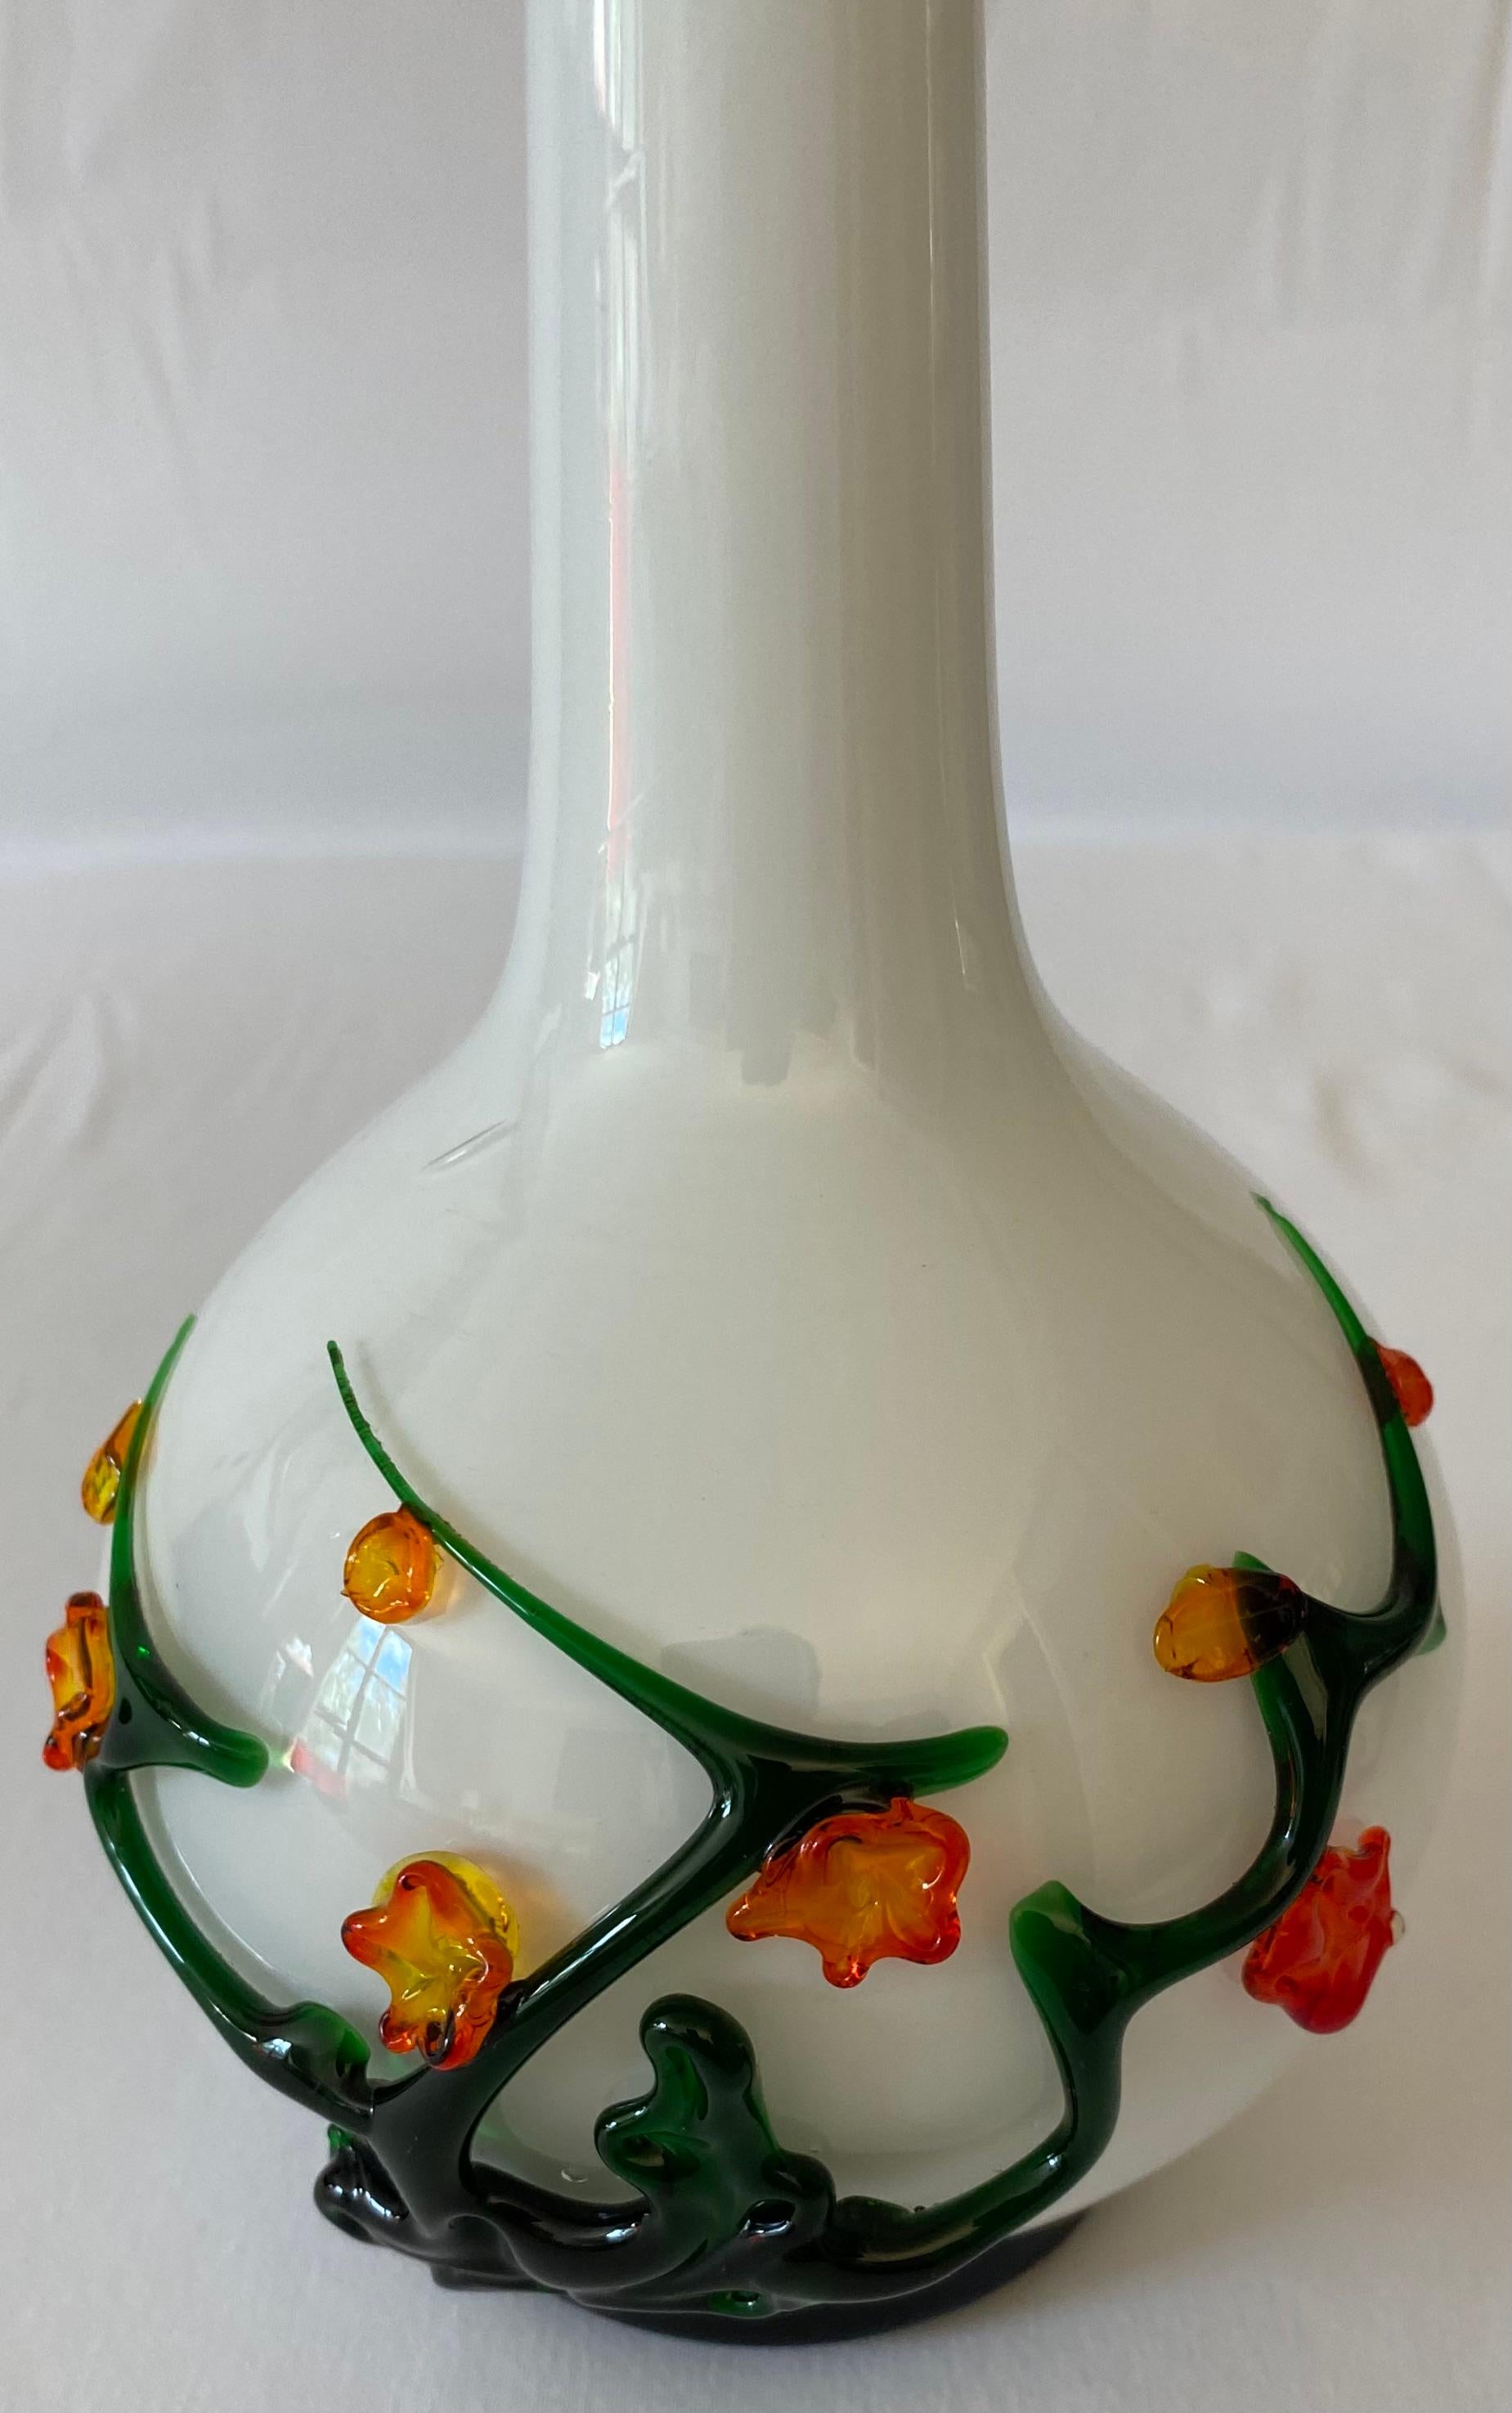 Magnifique vase en verre d'art soufflé de Murano avec décoration florale appliquée.

Le joli décor floral est appliqué à chaud sur un fond blanc. Idéal pour exposer vos fleurs préférées. Il rehausserait n'importe quelle étagère, table ou comptoir.